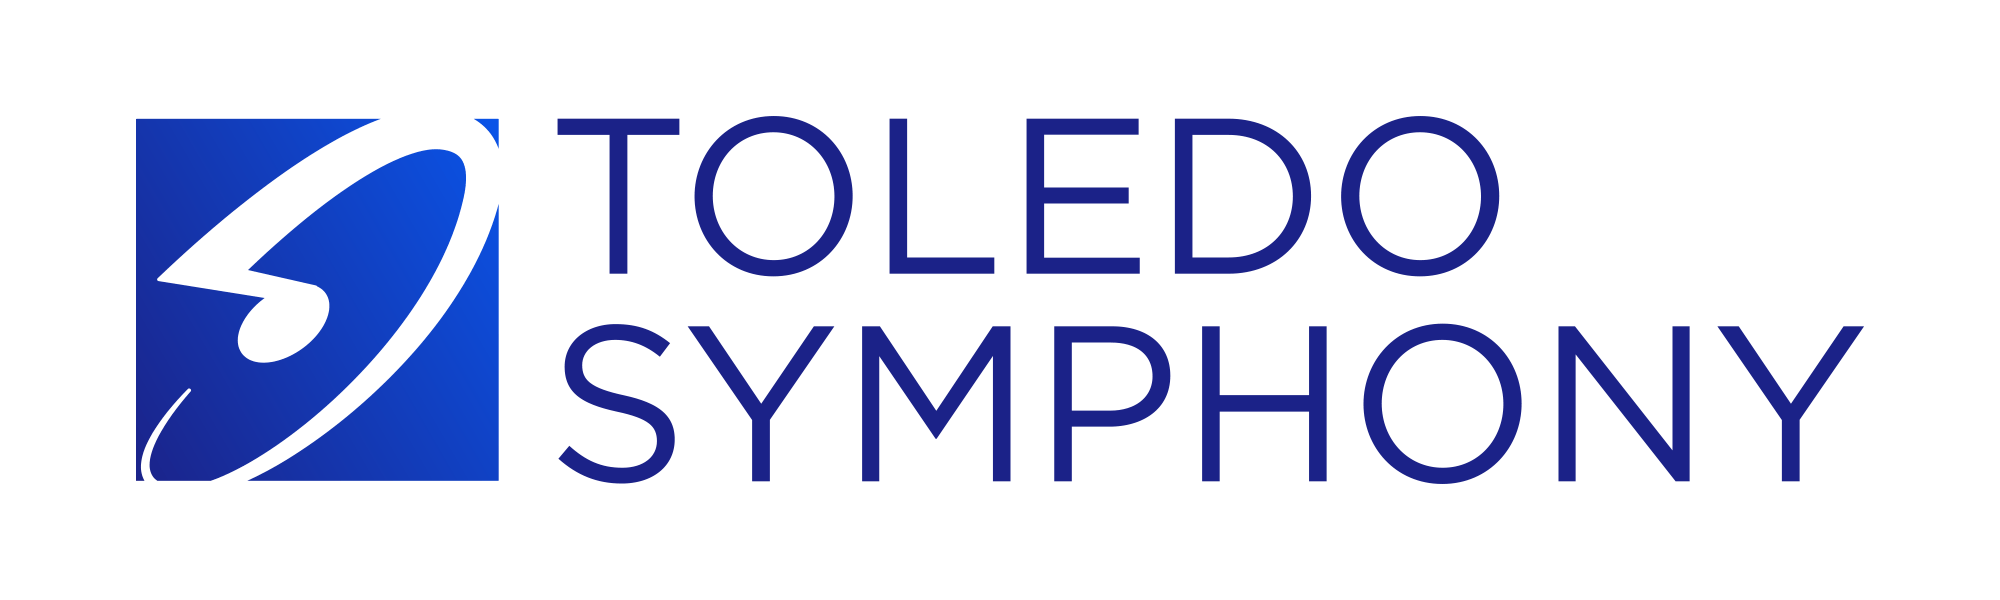 Toledo Logo - Toledo Symphony Orchestra Branding Assets Symphony Orchestra